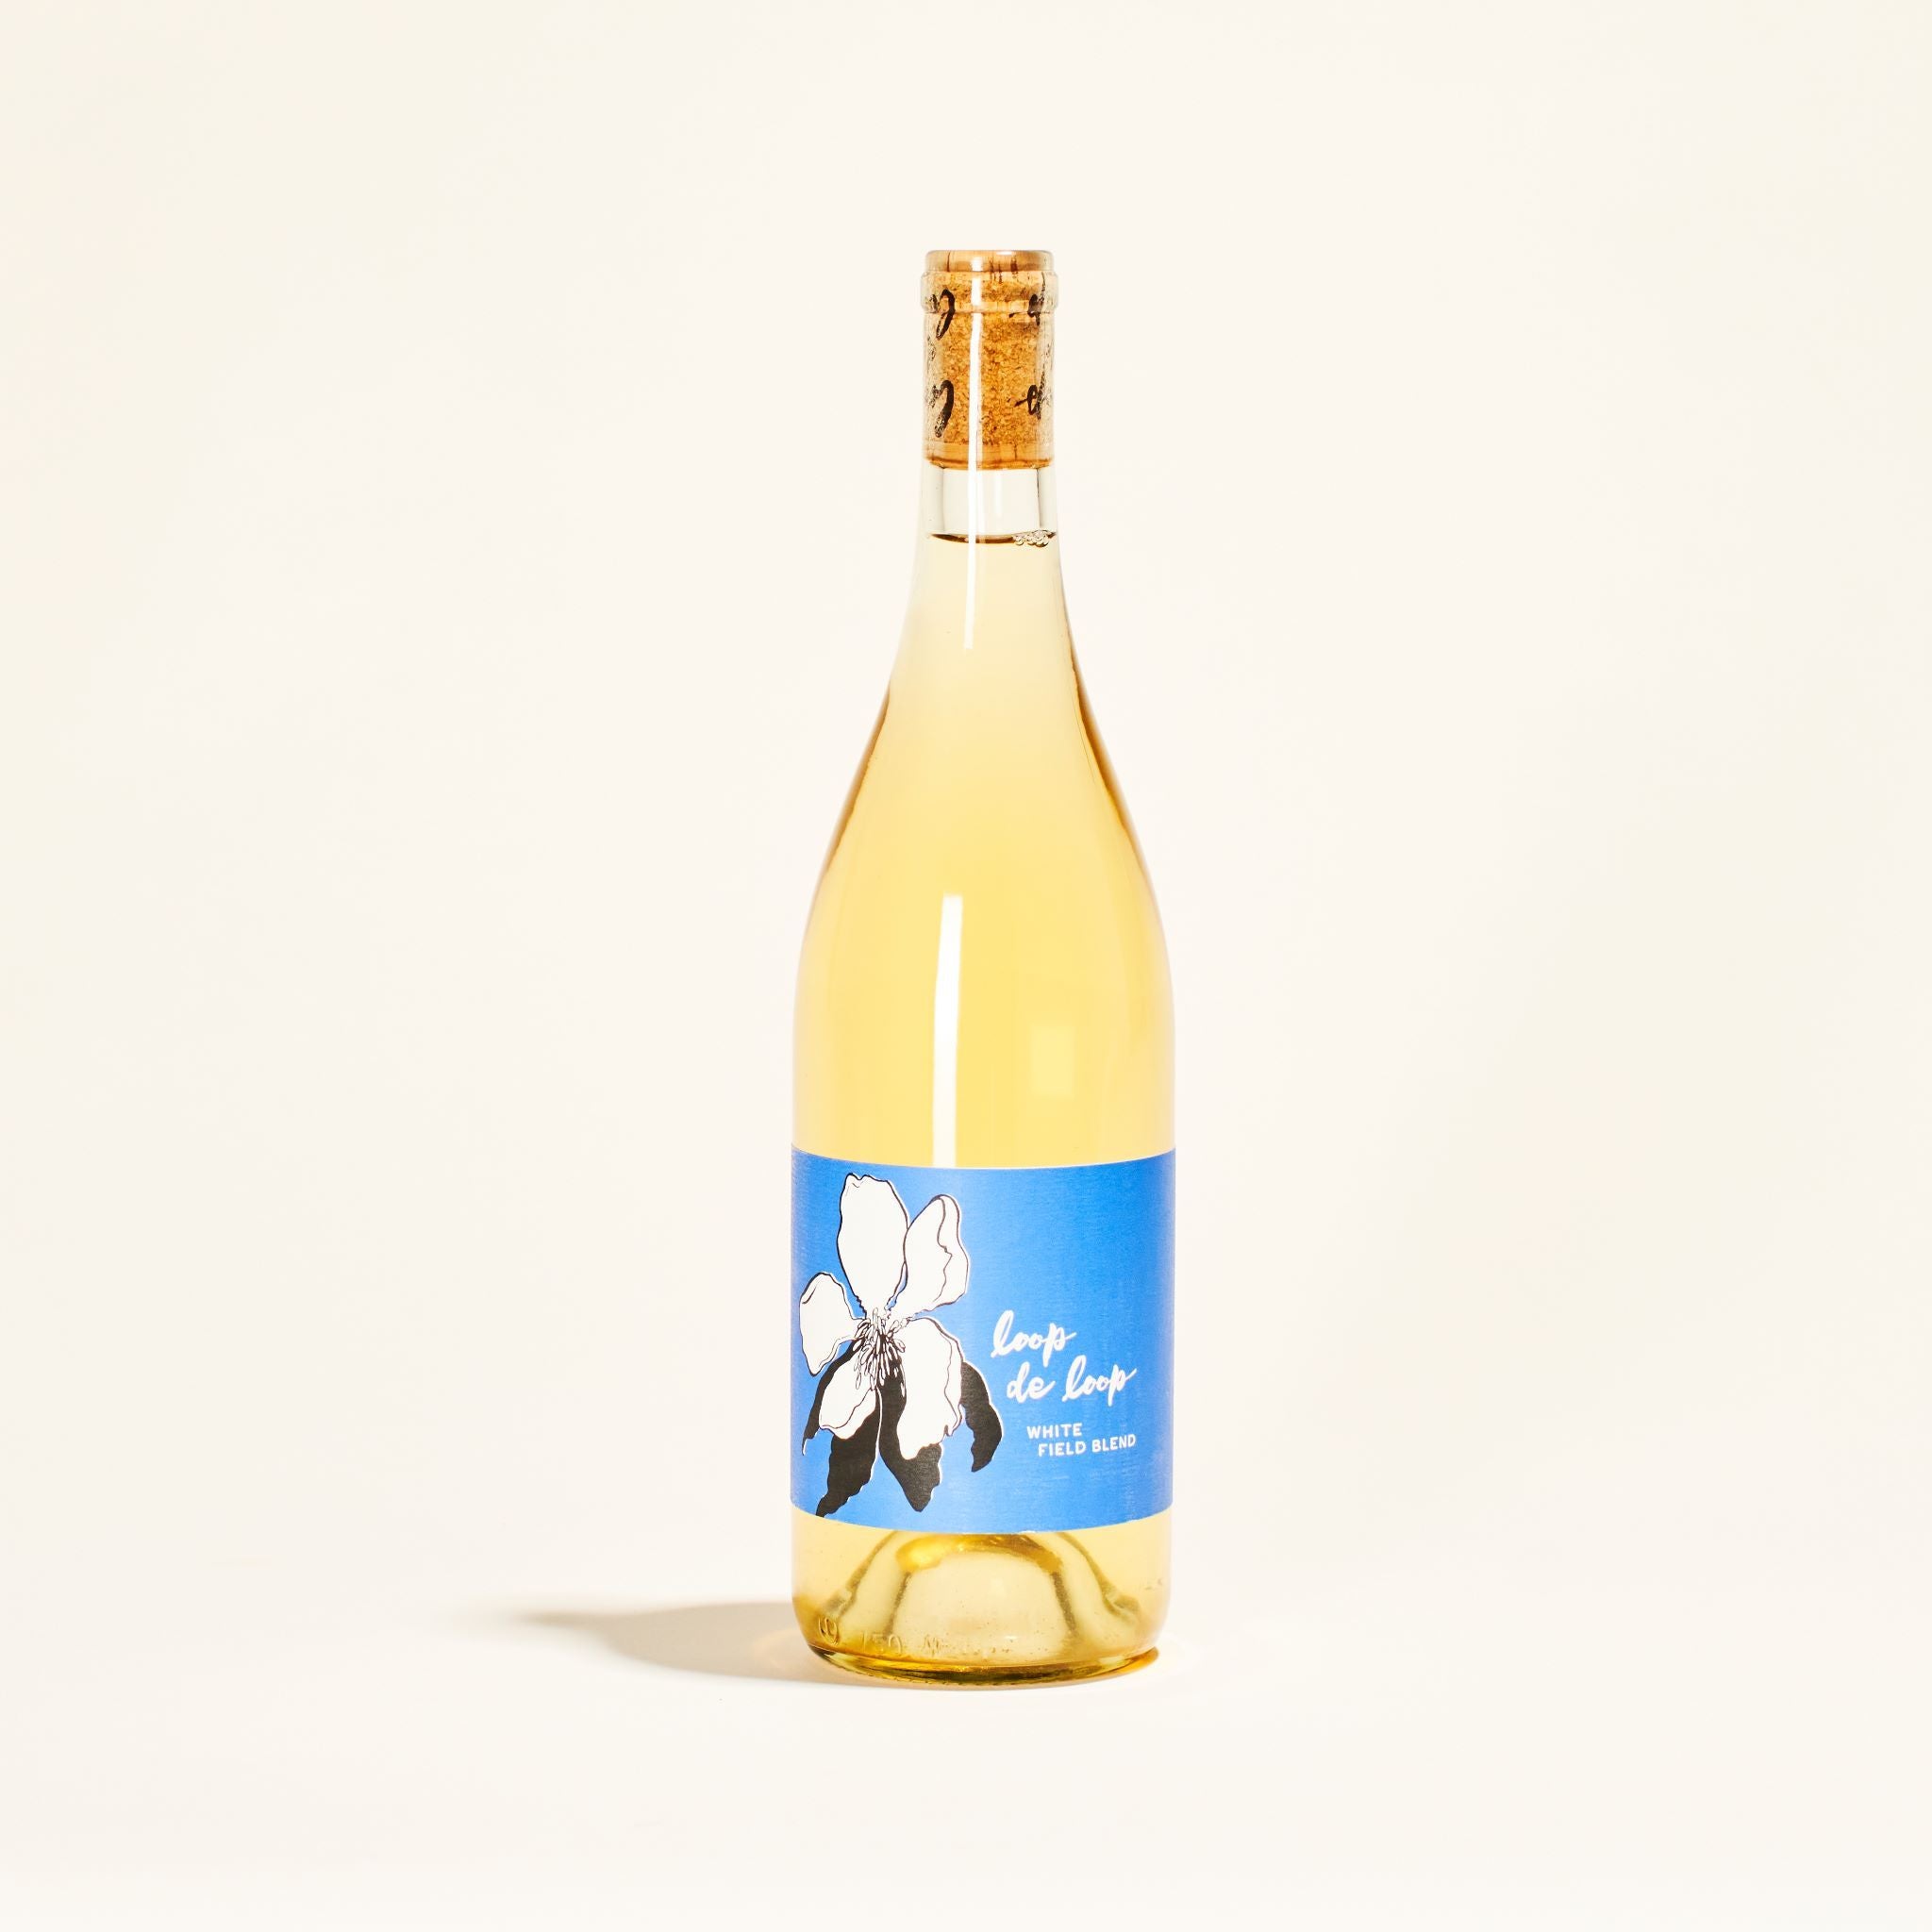 natural white wine bottle acadia vineyard white field blend loop de loop oregon usa